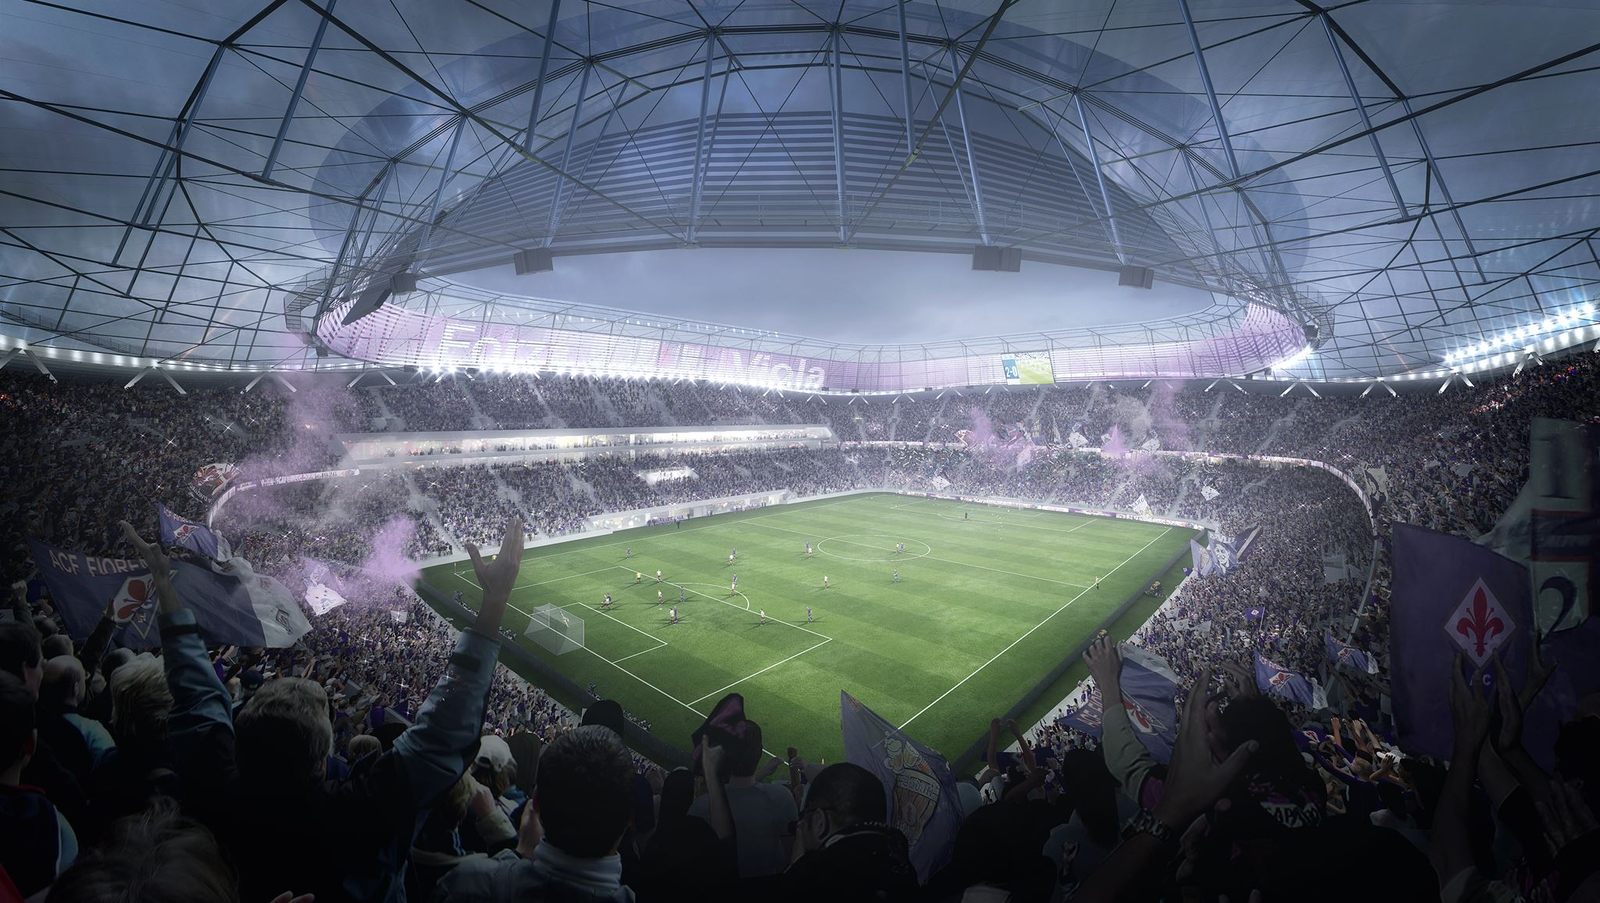 Design: Stadio della Fiorentina – StadiumDB.com